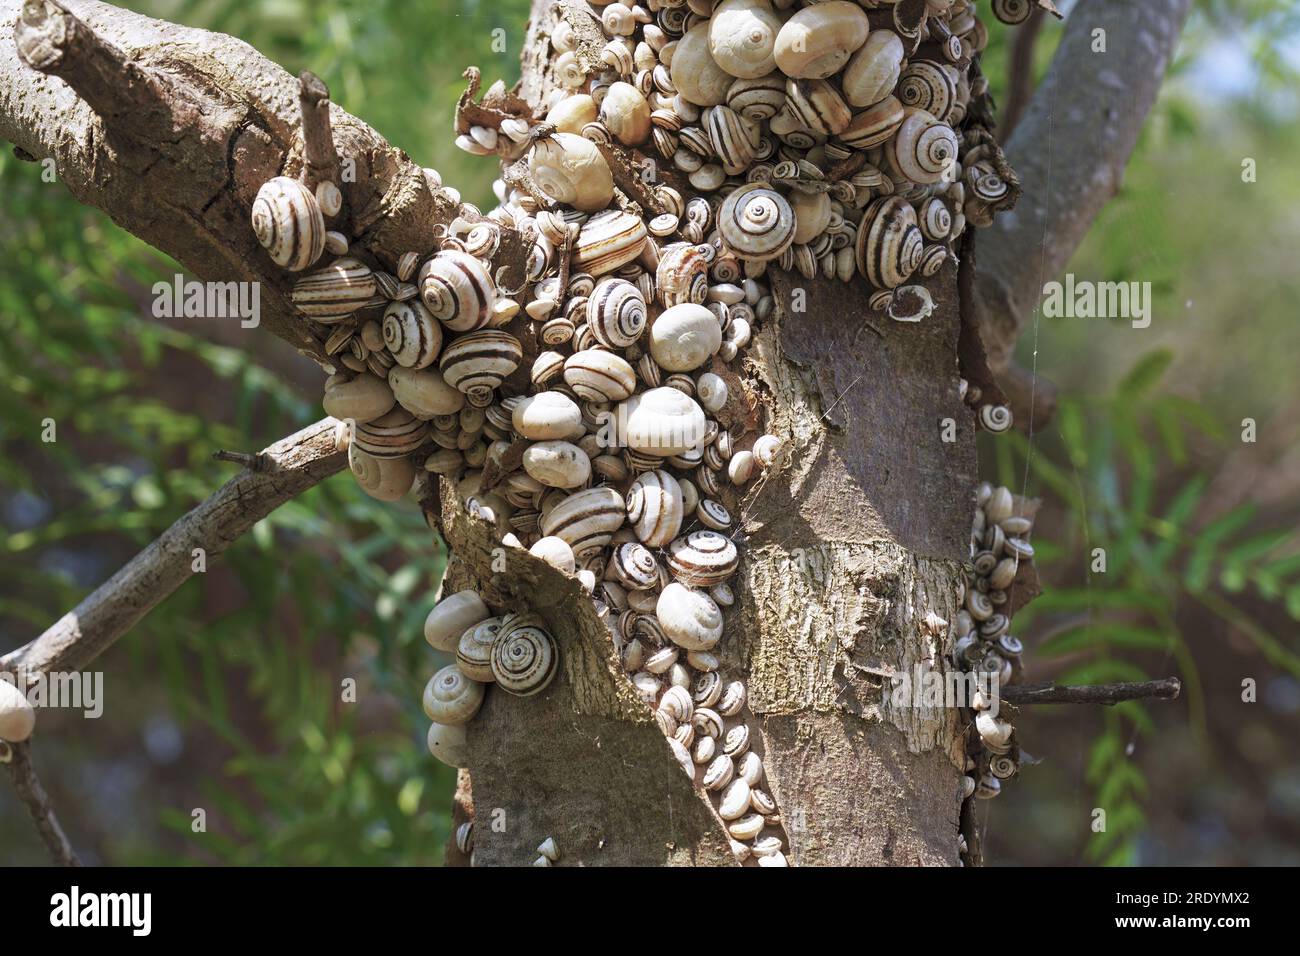 Molti esemplari di lumaca costiera mediterranea o lumaca bianca italiana si sono riuniti in estivazione sulla ramificazione di un tronco, Theba pisana, Helicidae Foto Stock